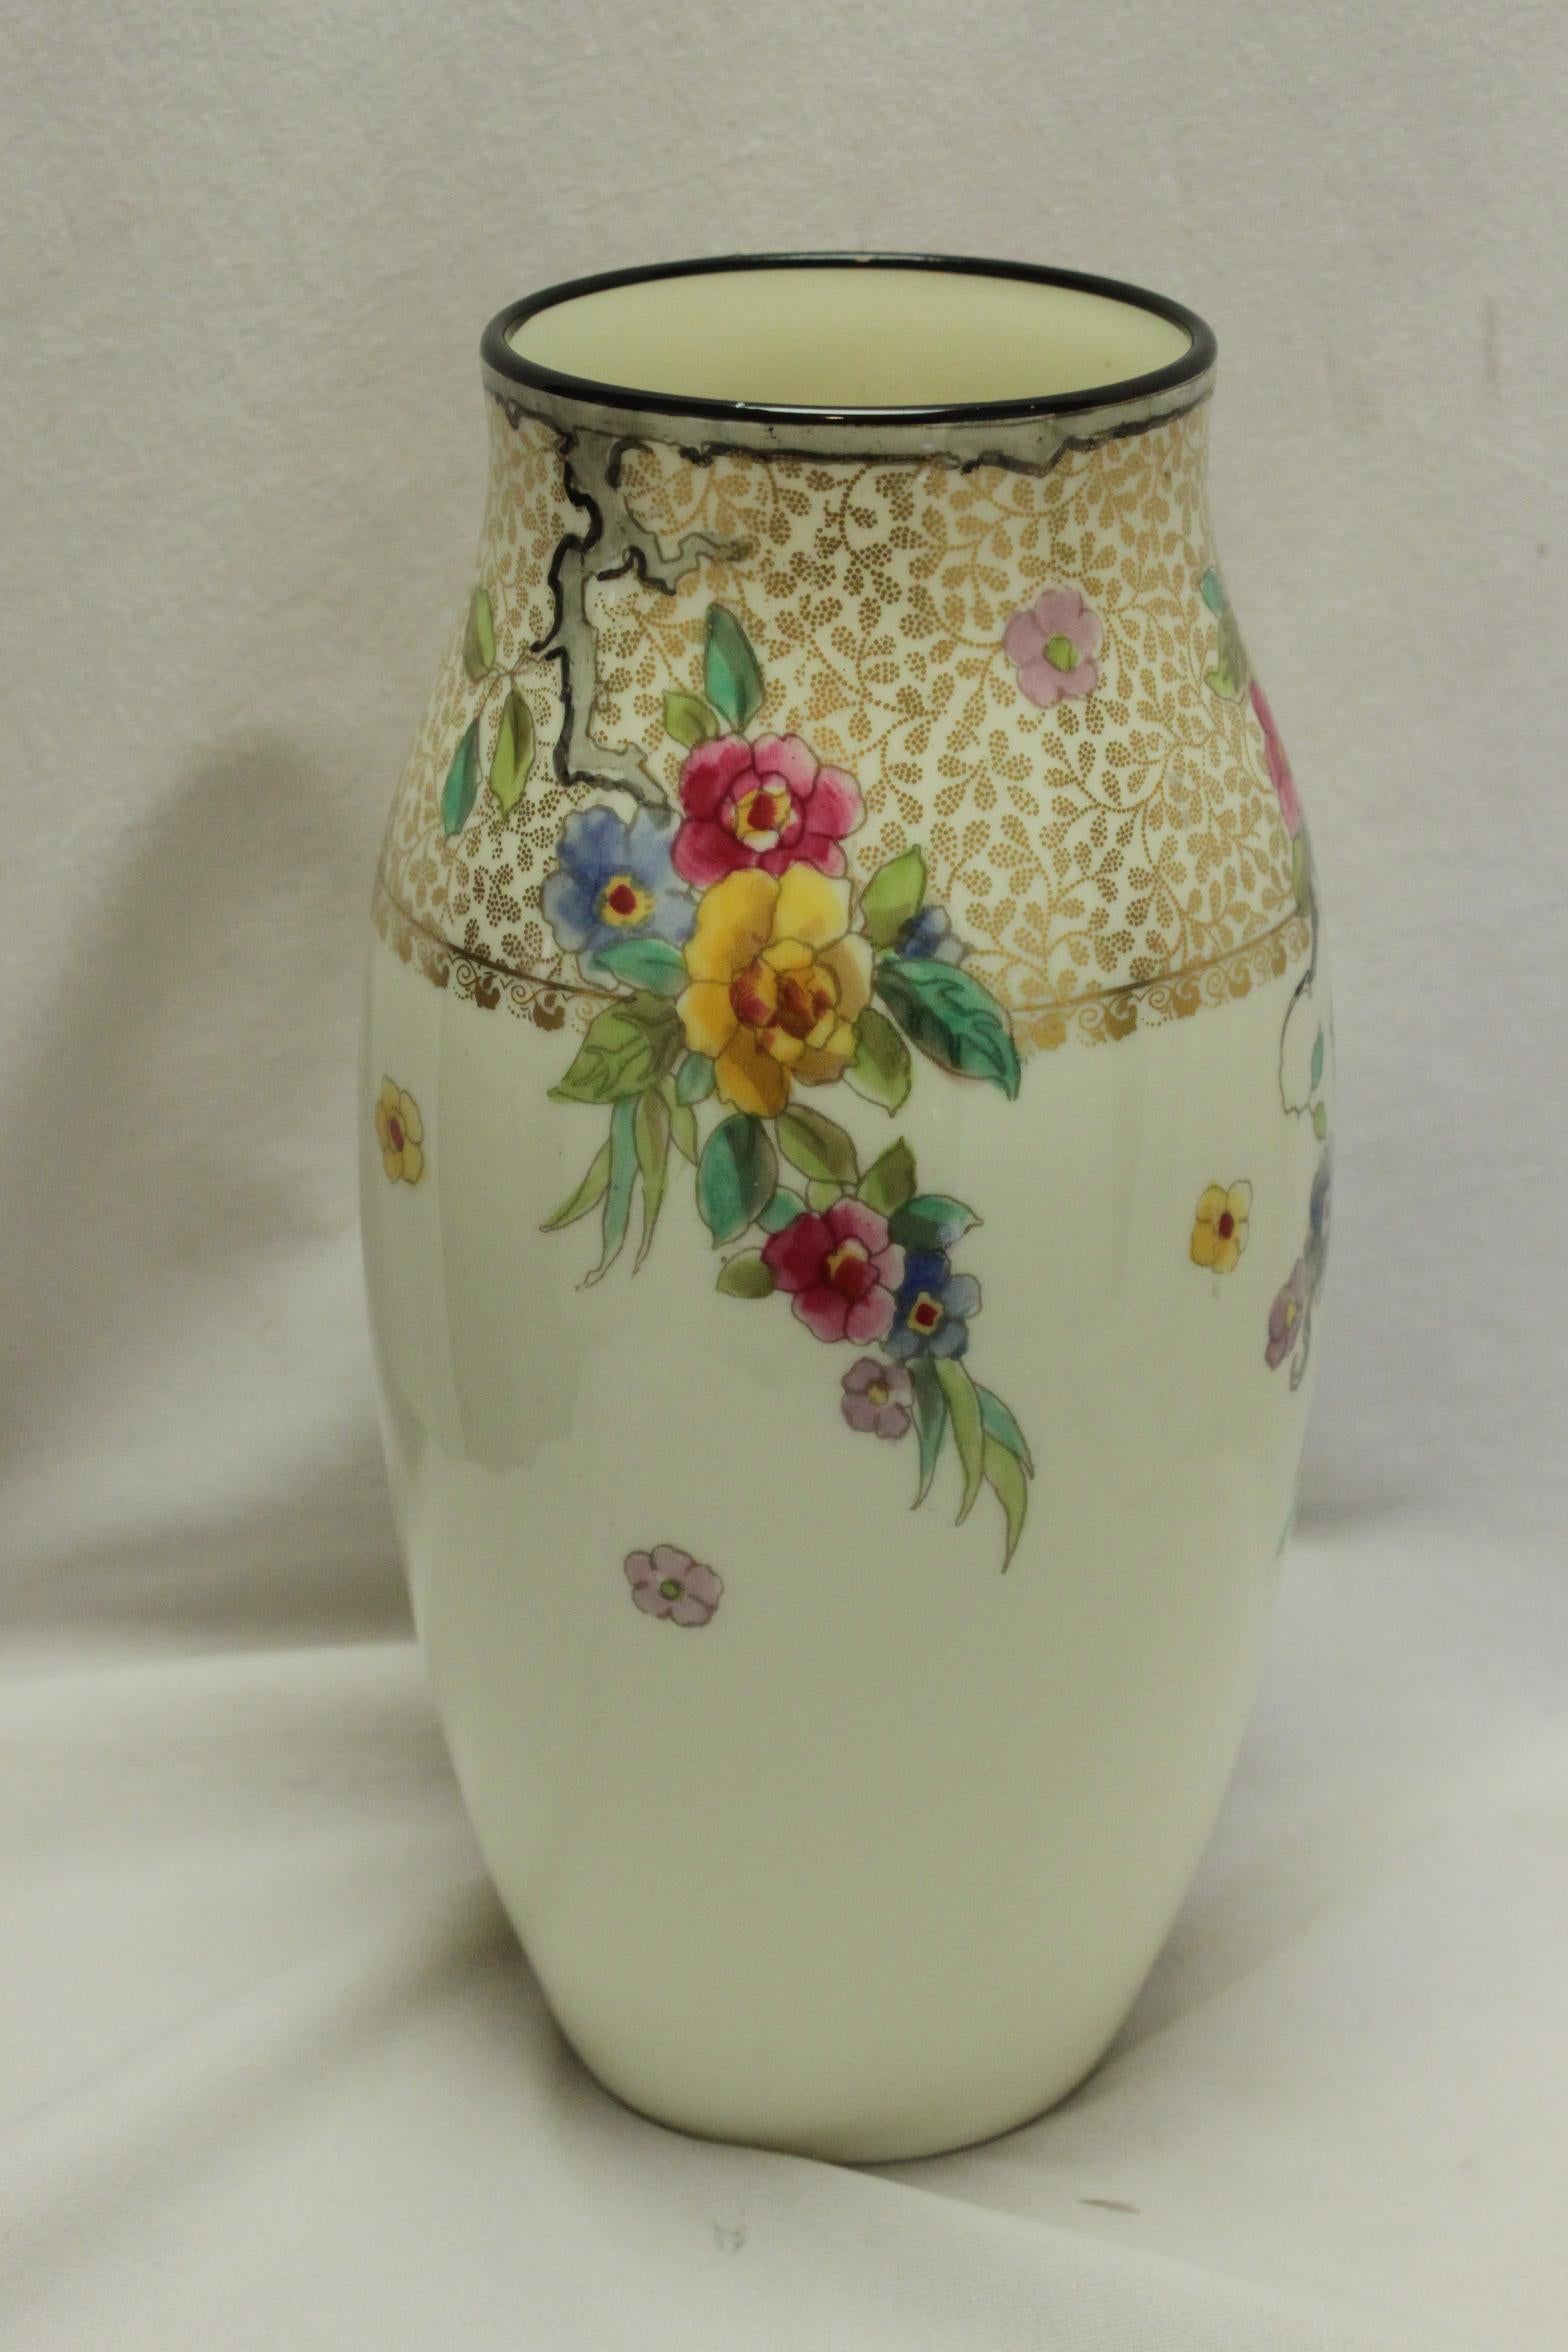 Ce très joli vase en porcelaine Royal Doulton est décoré d'une bande de filigrane doré sur le dessus, à partir de laquelle trois branches suspendues de fleurs colorées à la main descendent le long du corps en porcelaine crémeuse. Il y a également un